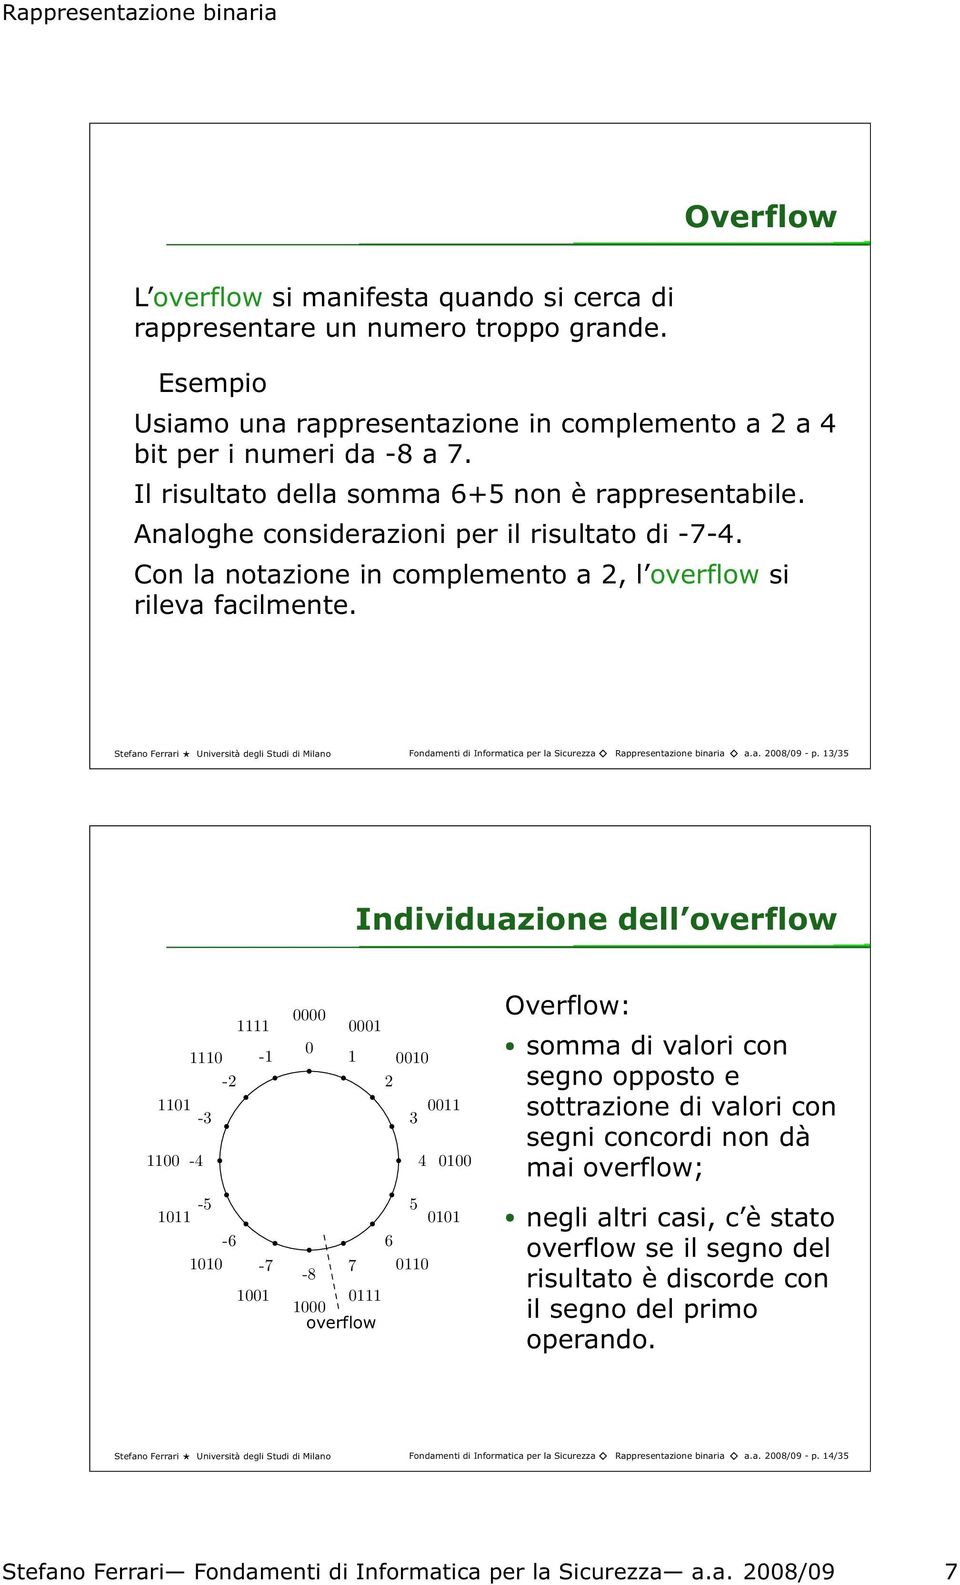 Stefano Ferrari Università degli Studi di Milano Fondamenti di Informatica per la Sicurezza Rappresentazione binaria a.a. 2008/09- p.